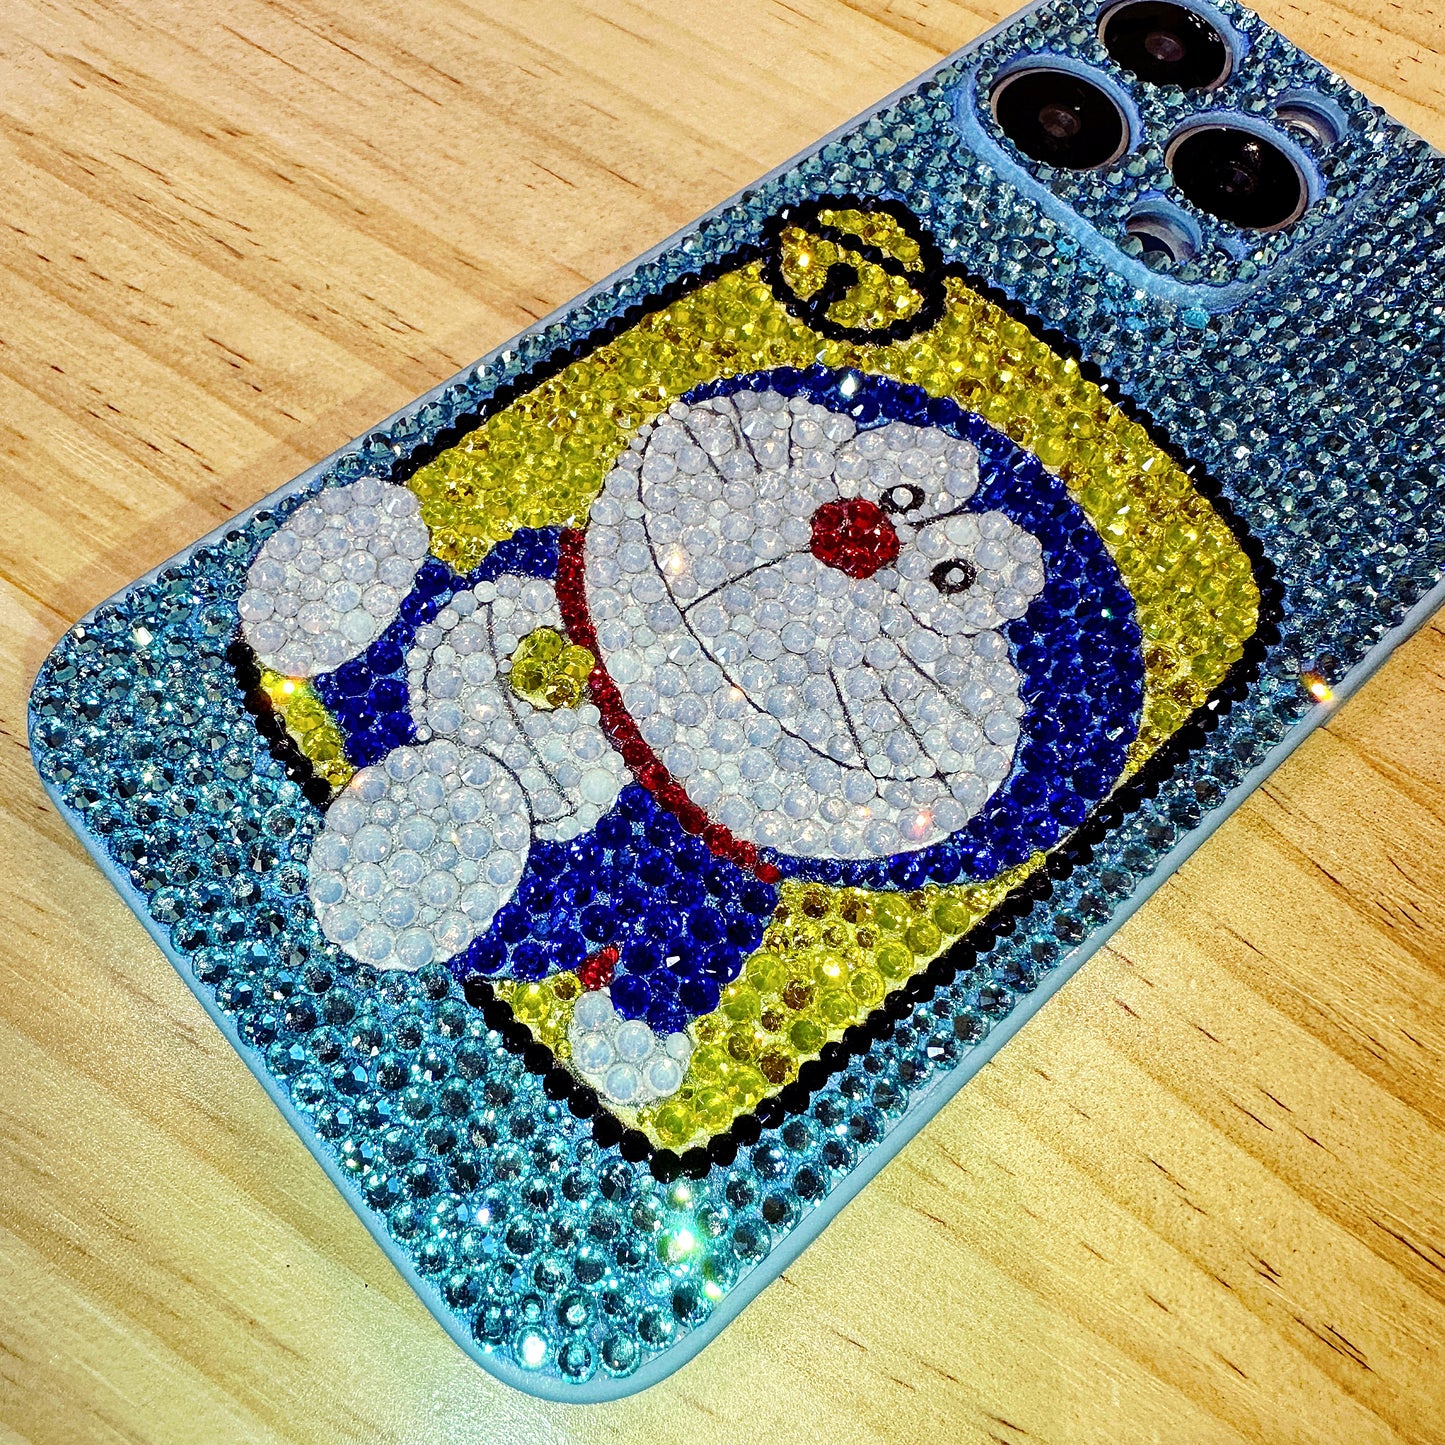 Handgemachte iPhone Hülle Luxus Blau Strass Niedliche Doraemon Hülle